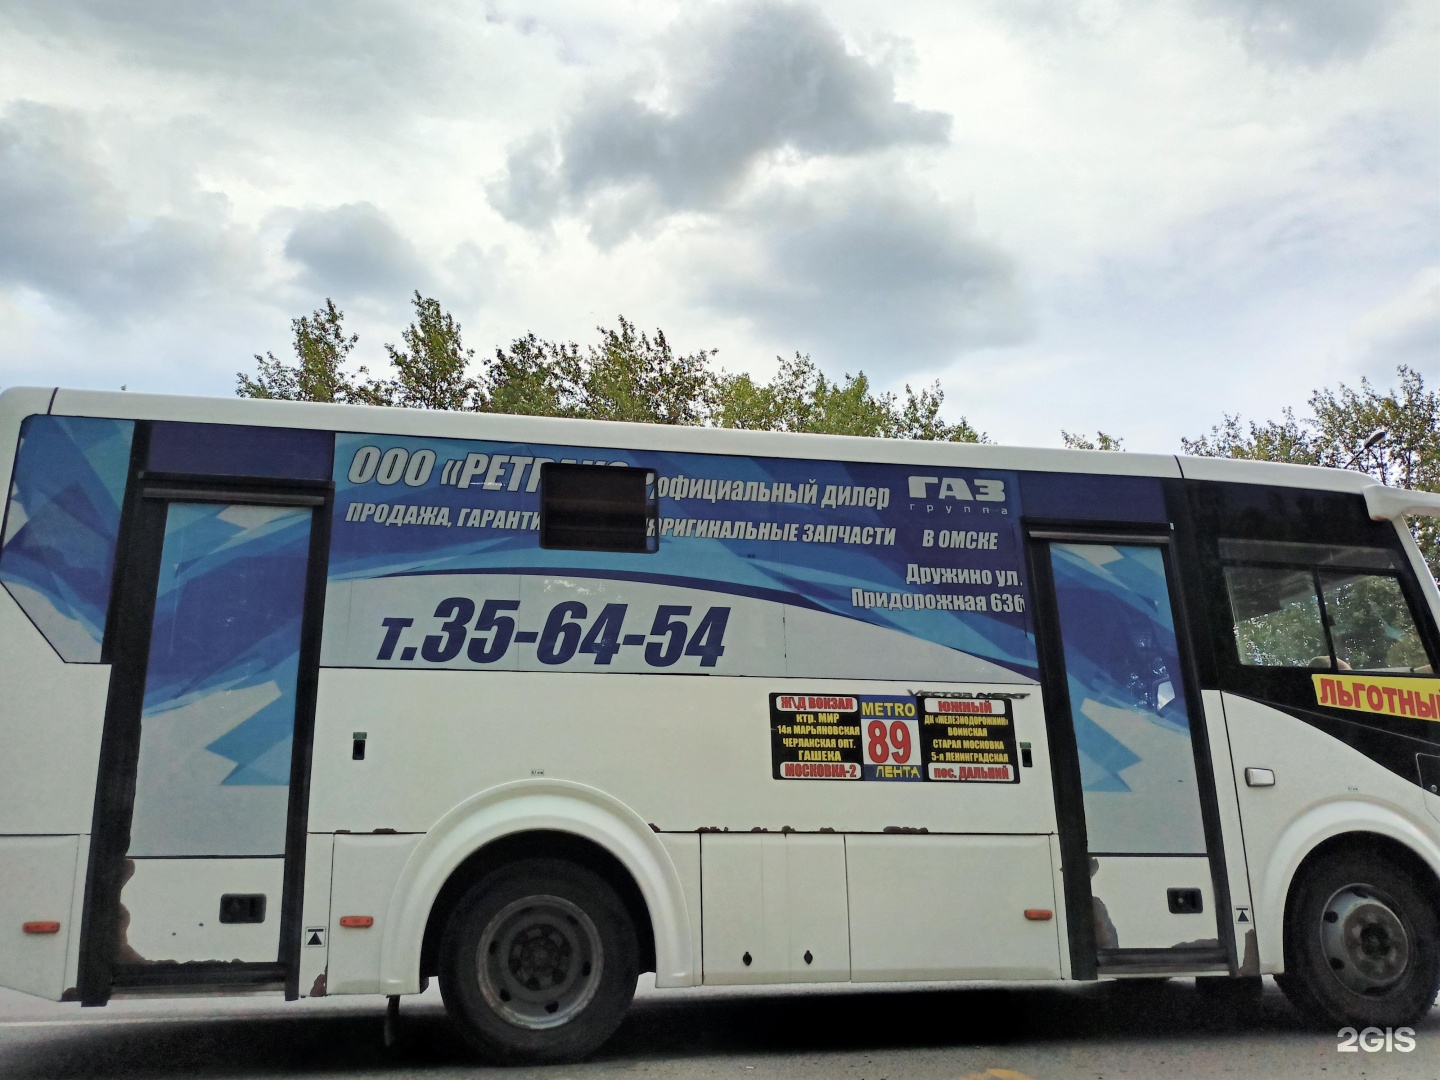 89 Автобус. Автобус 89 Красноярск. Автобус м89. 89 Автобус Казань. 89 автобус екатеринбург